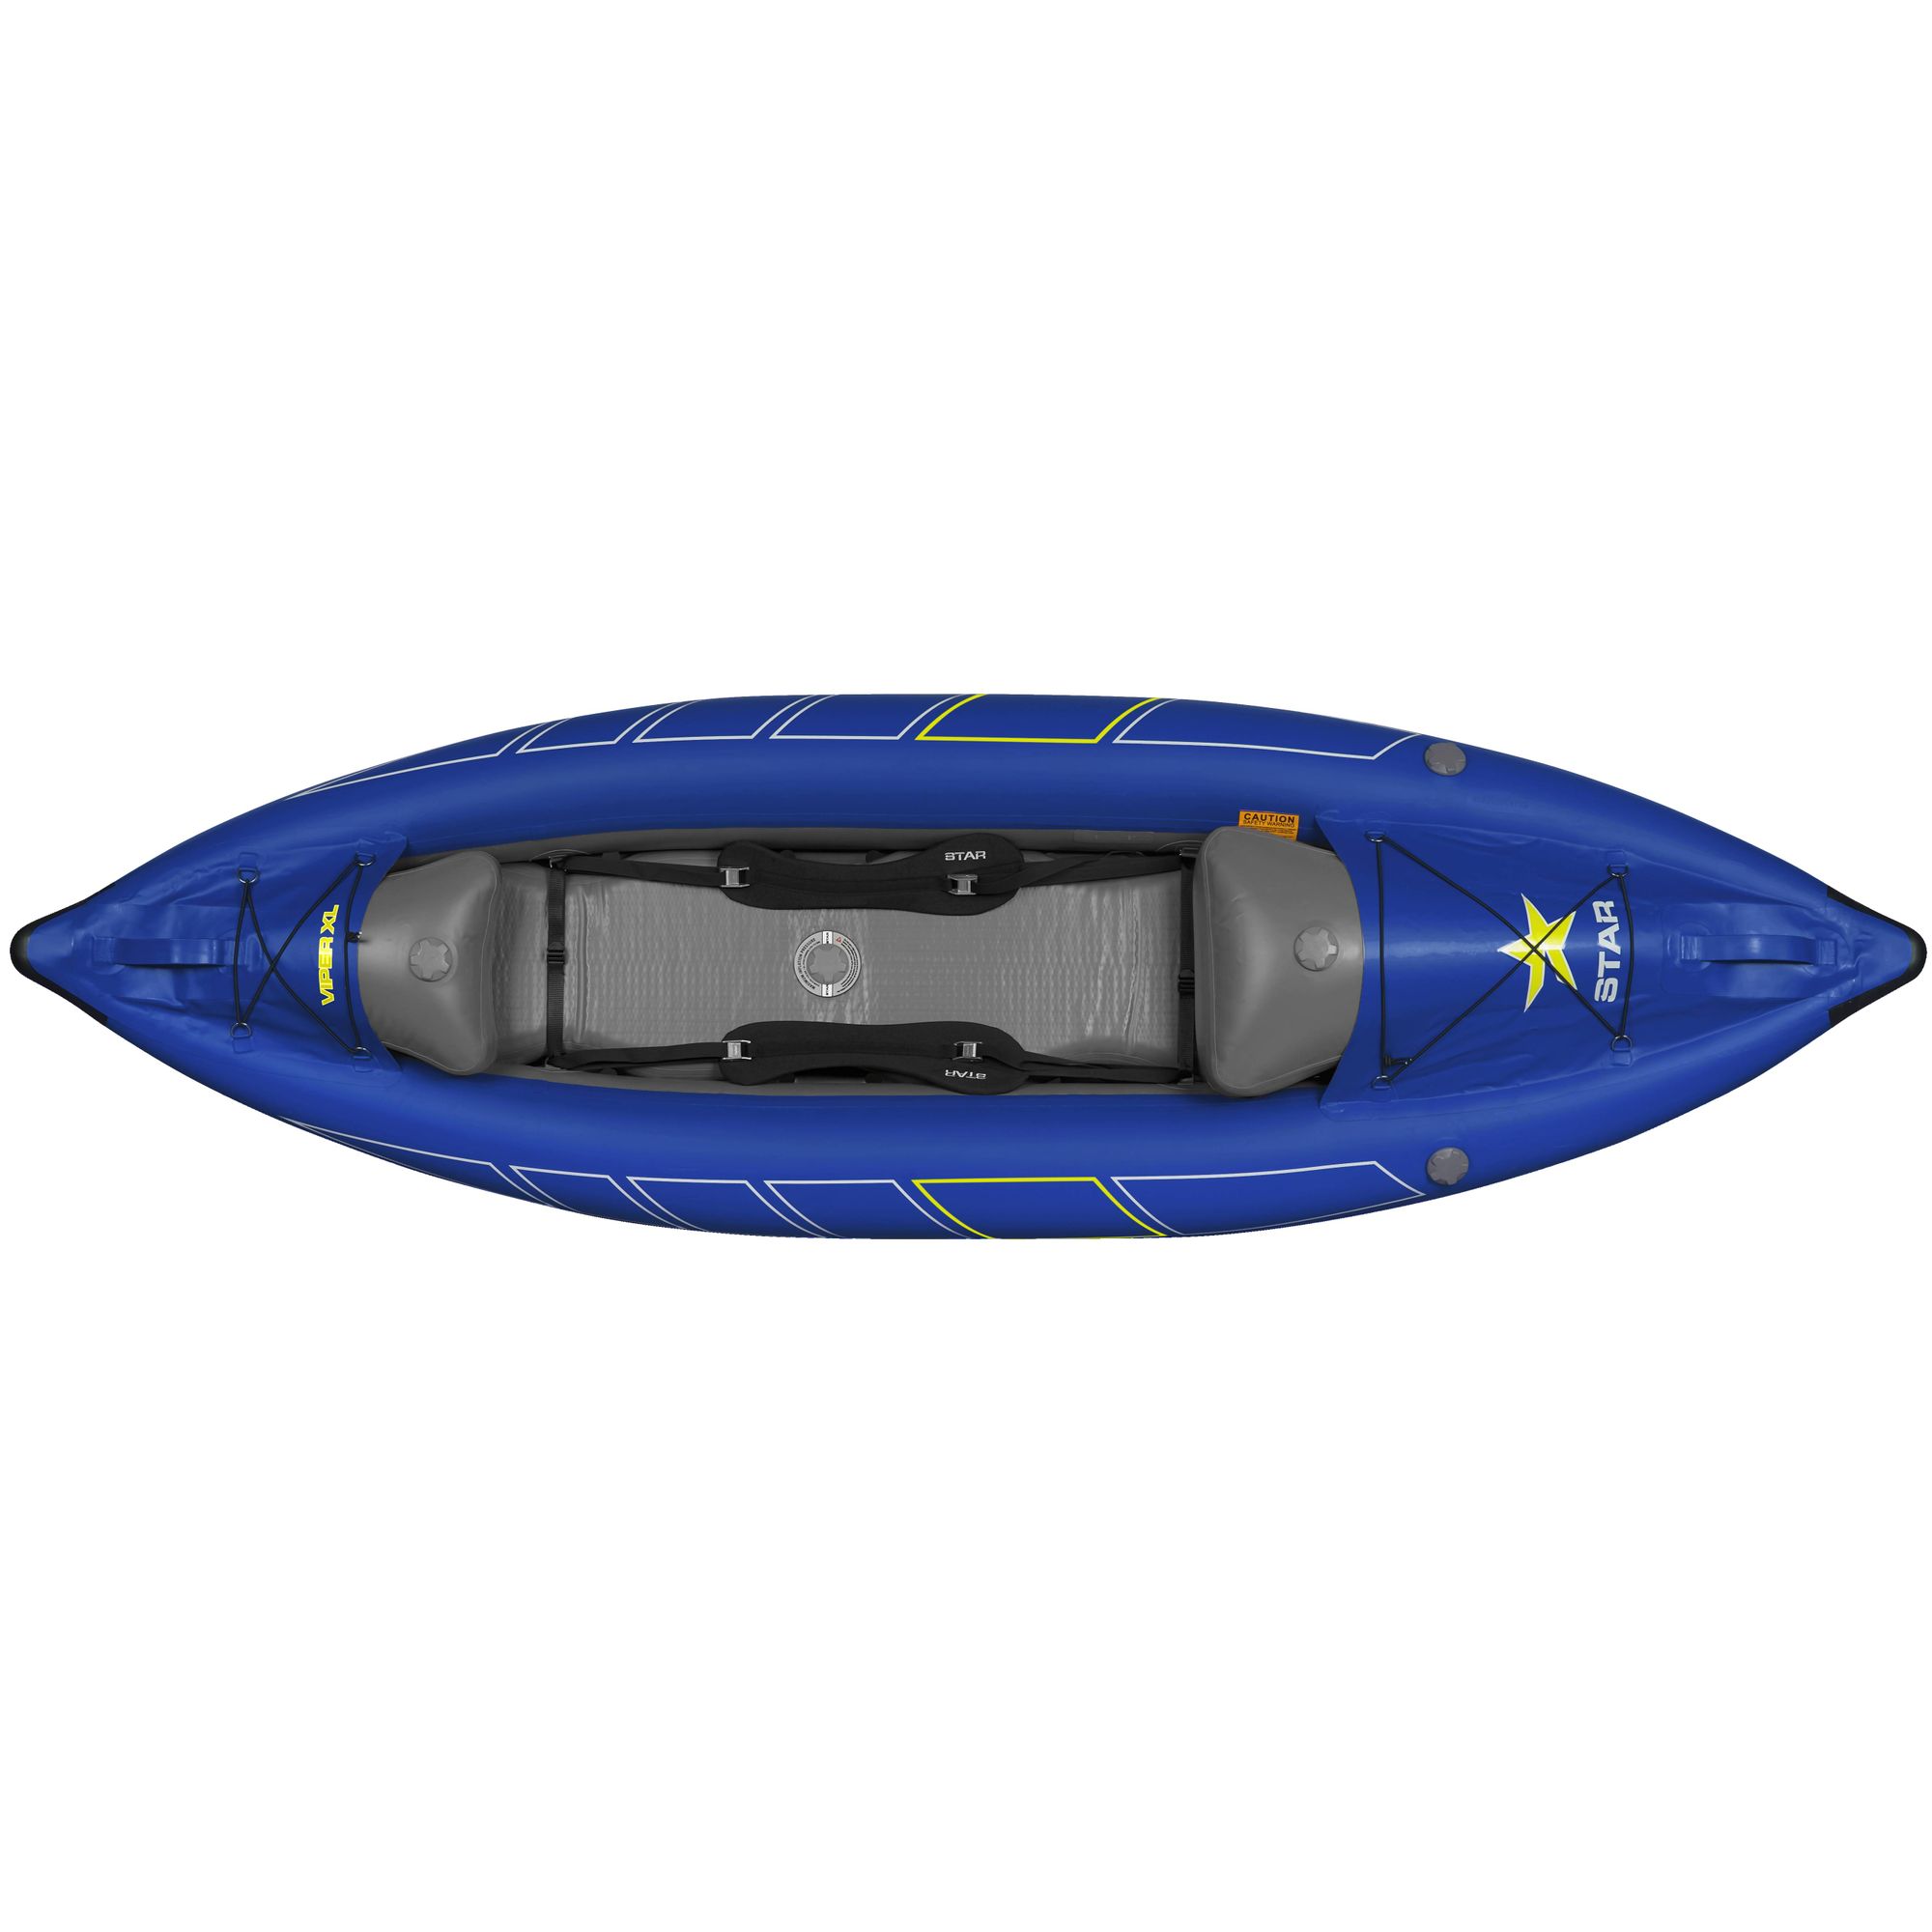 STAR Viper XL Inflatable Kayak NRS Viper XL aufblasbares Luftkajak 